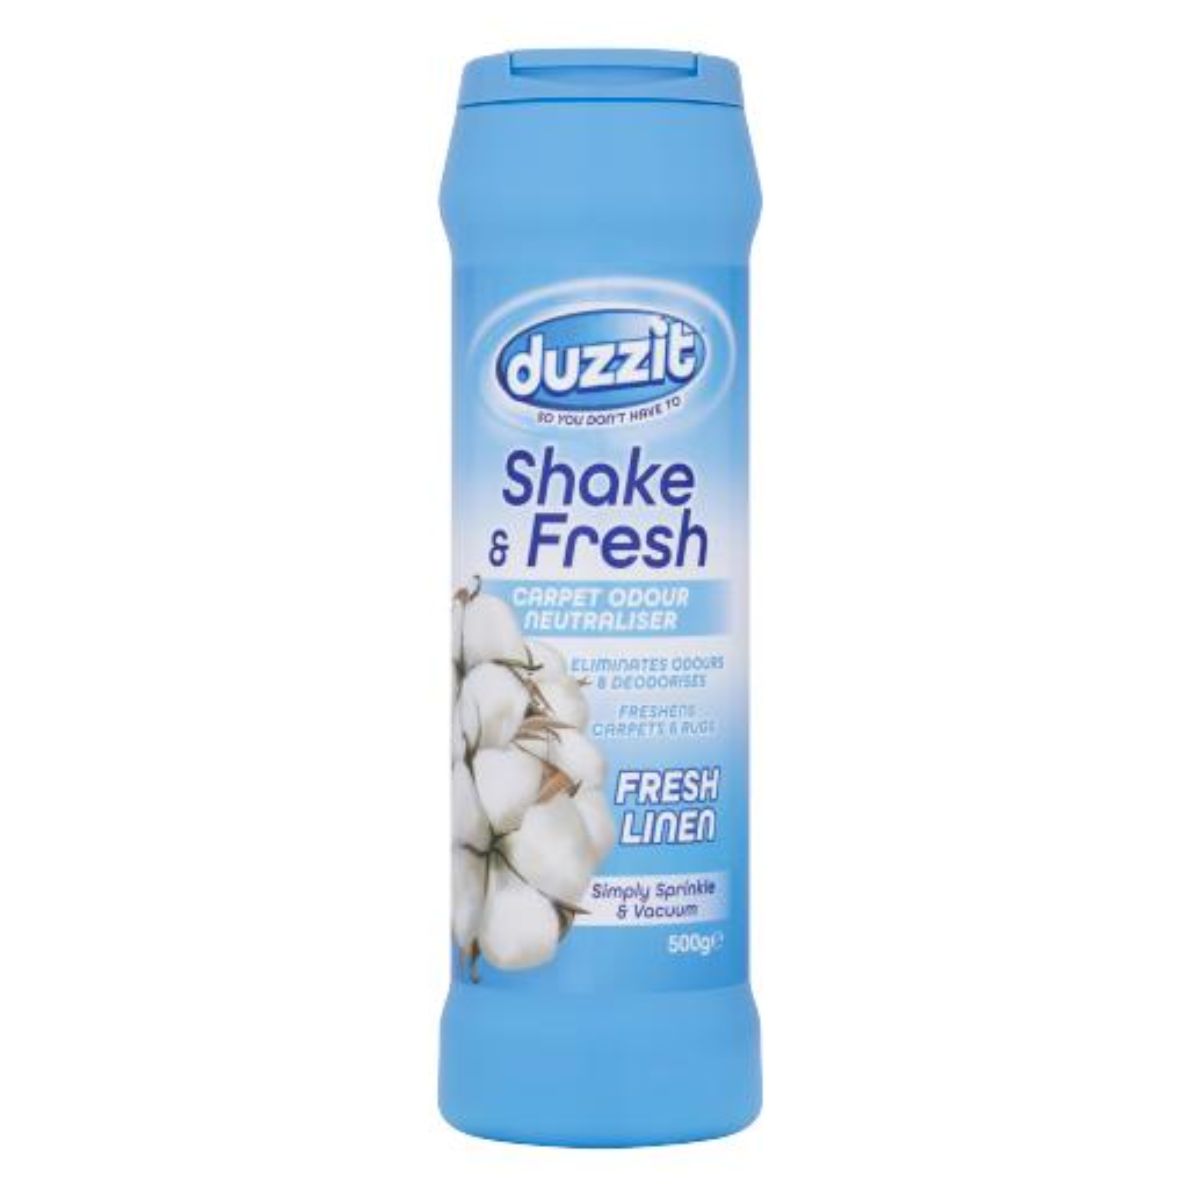 A bottle of Duzzit - Shake & Fresh Carpet Odour Neutraliser - Fresh Linen - 500g laundry detergent.